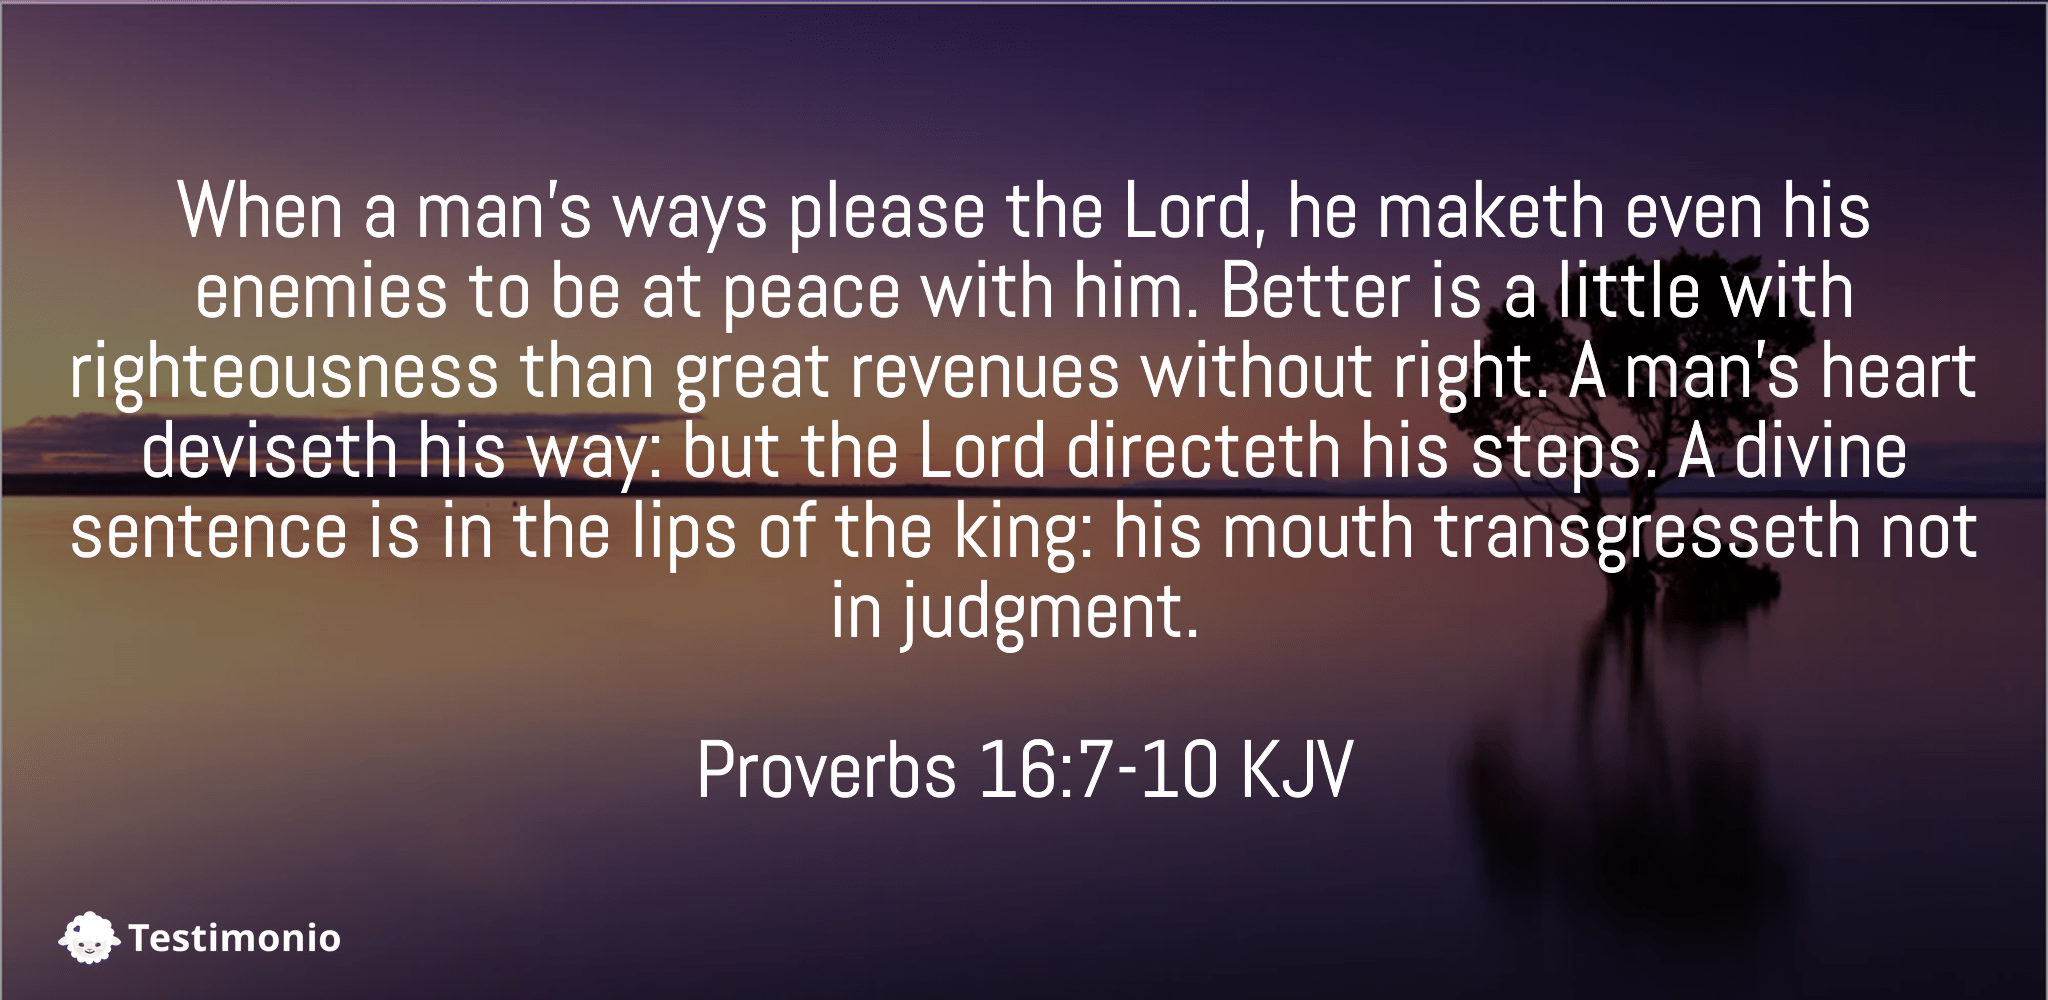 Proverbs 16:7-10